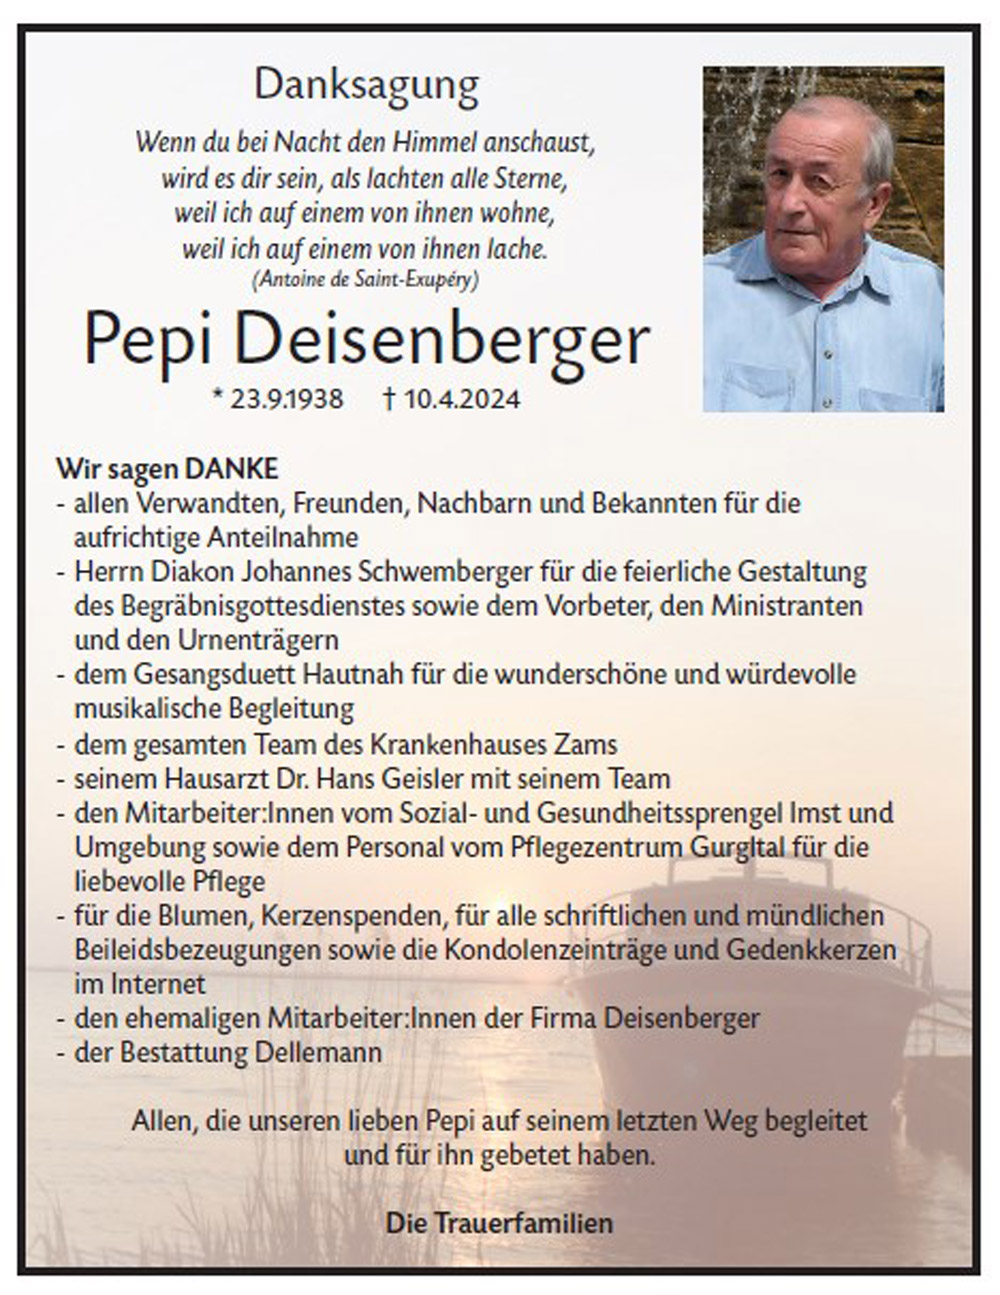 Pepi Deisenberger 